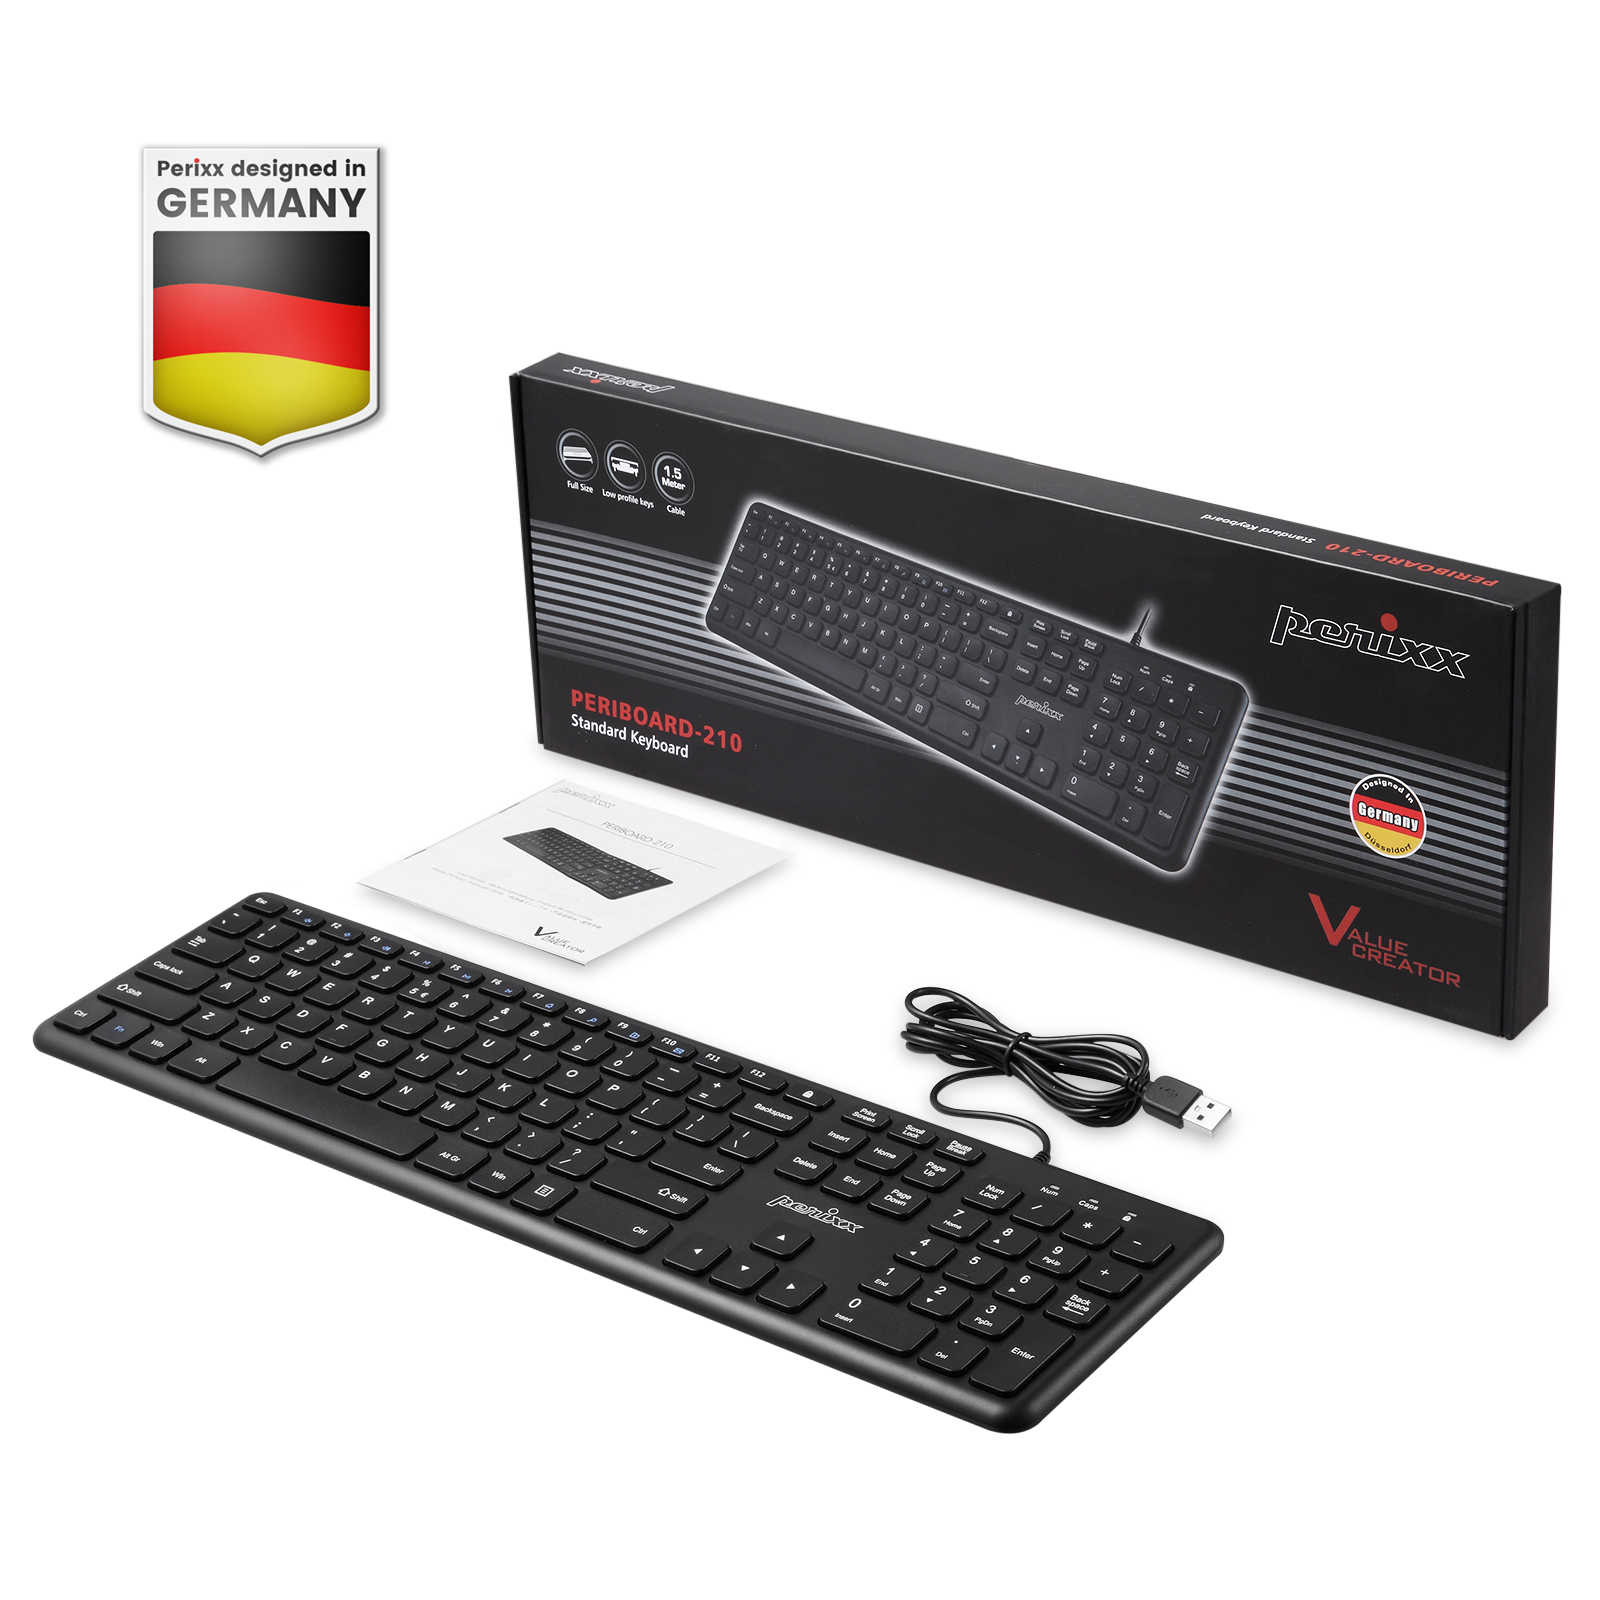 Perixx Periboard-210US - Wired Slim USB Keyboard - Quiet Scissor Keys - Black - image 4 of 7